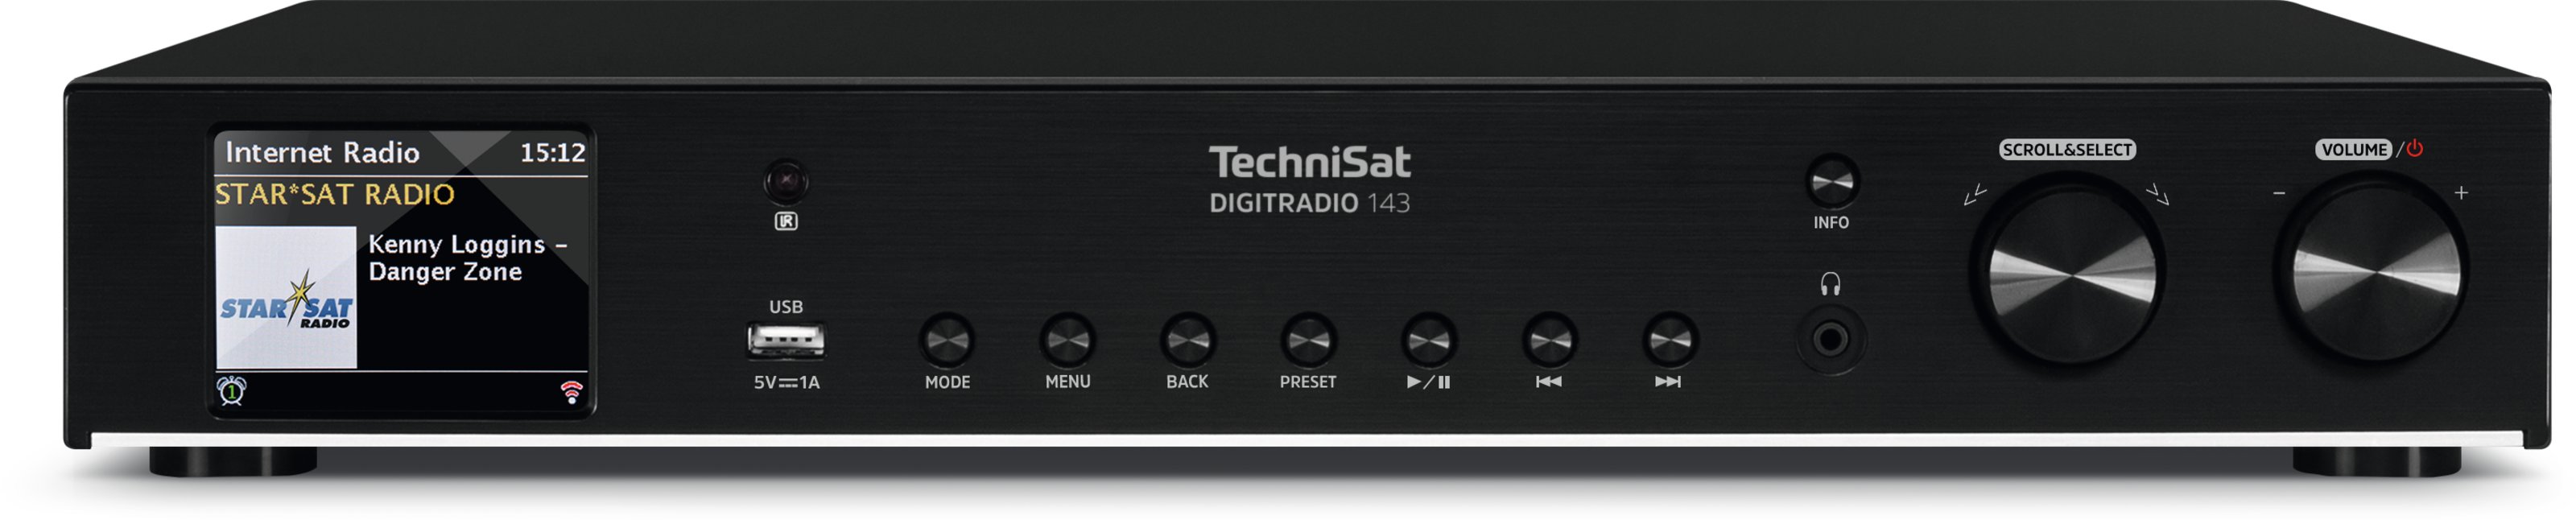 Tuner TechniSat pliki DAB+, WiFi, DigitRadio CD muzyczne 143 , , LAN, , odtwarza streaming USB CD,wejście internetowe odtwarzacz FM